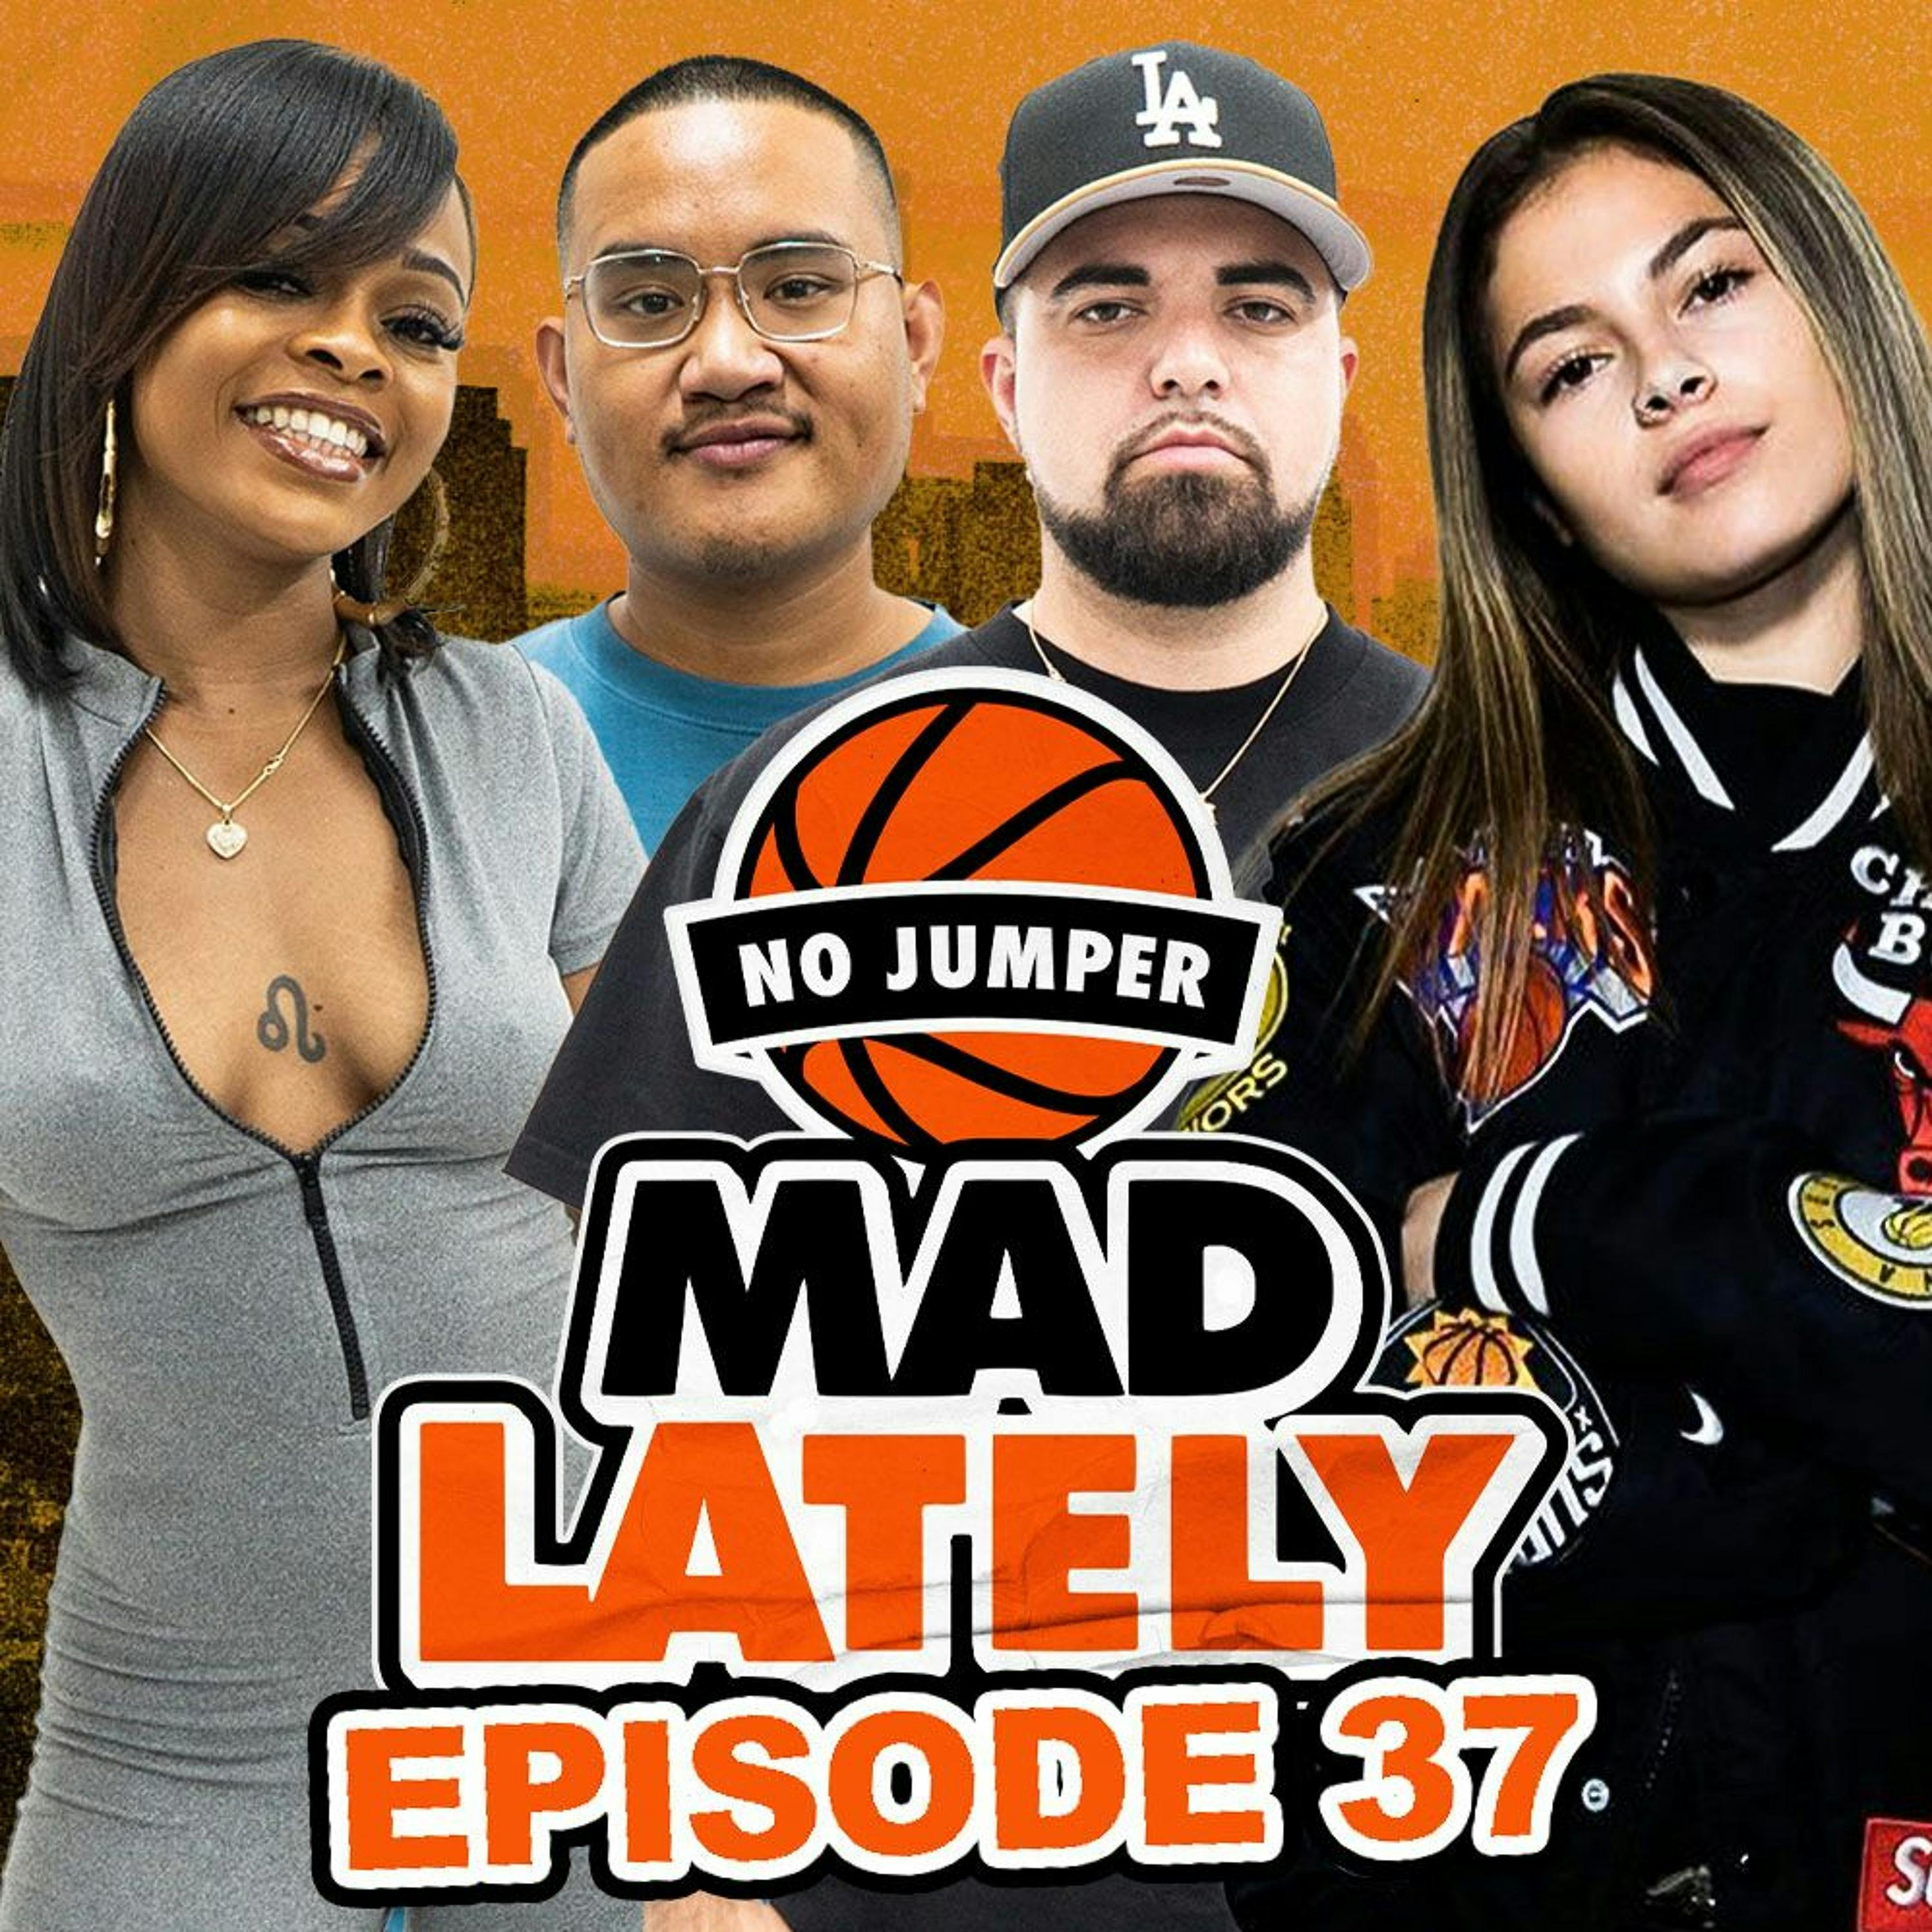 MAD LAtely Ep. 37 w/ Destiny Rogers â€“ No Jumper â€“ Podcast â€“ Podtail